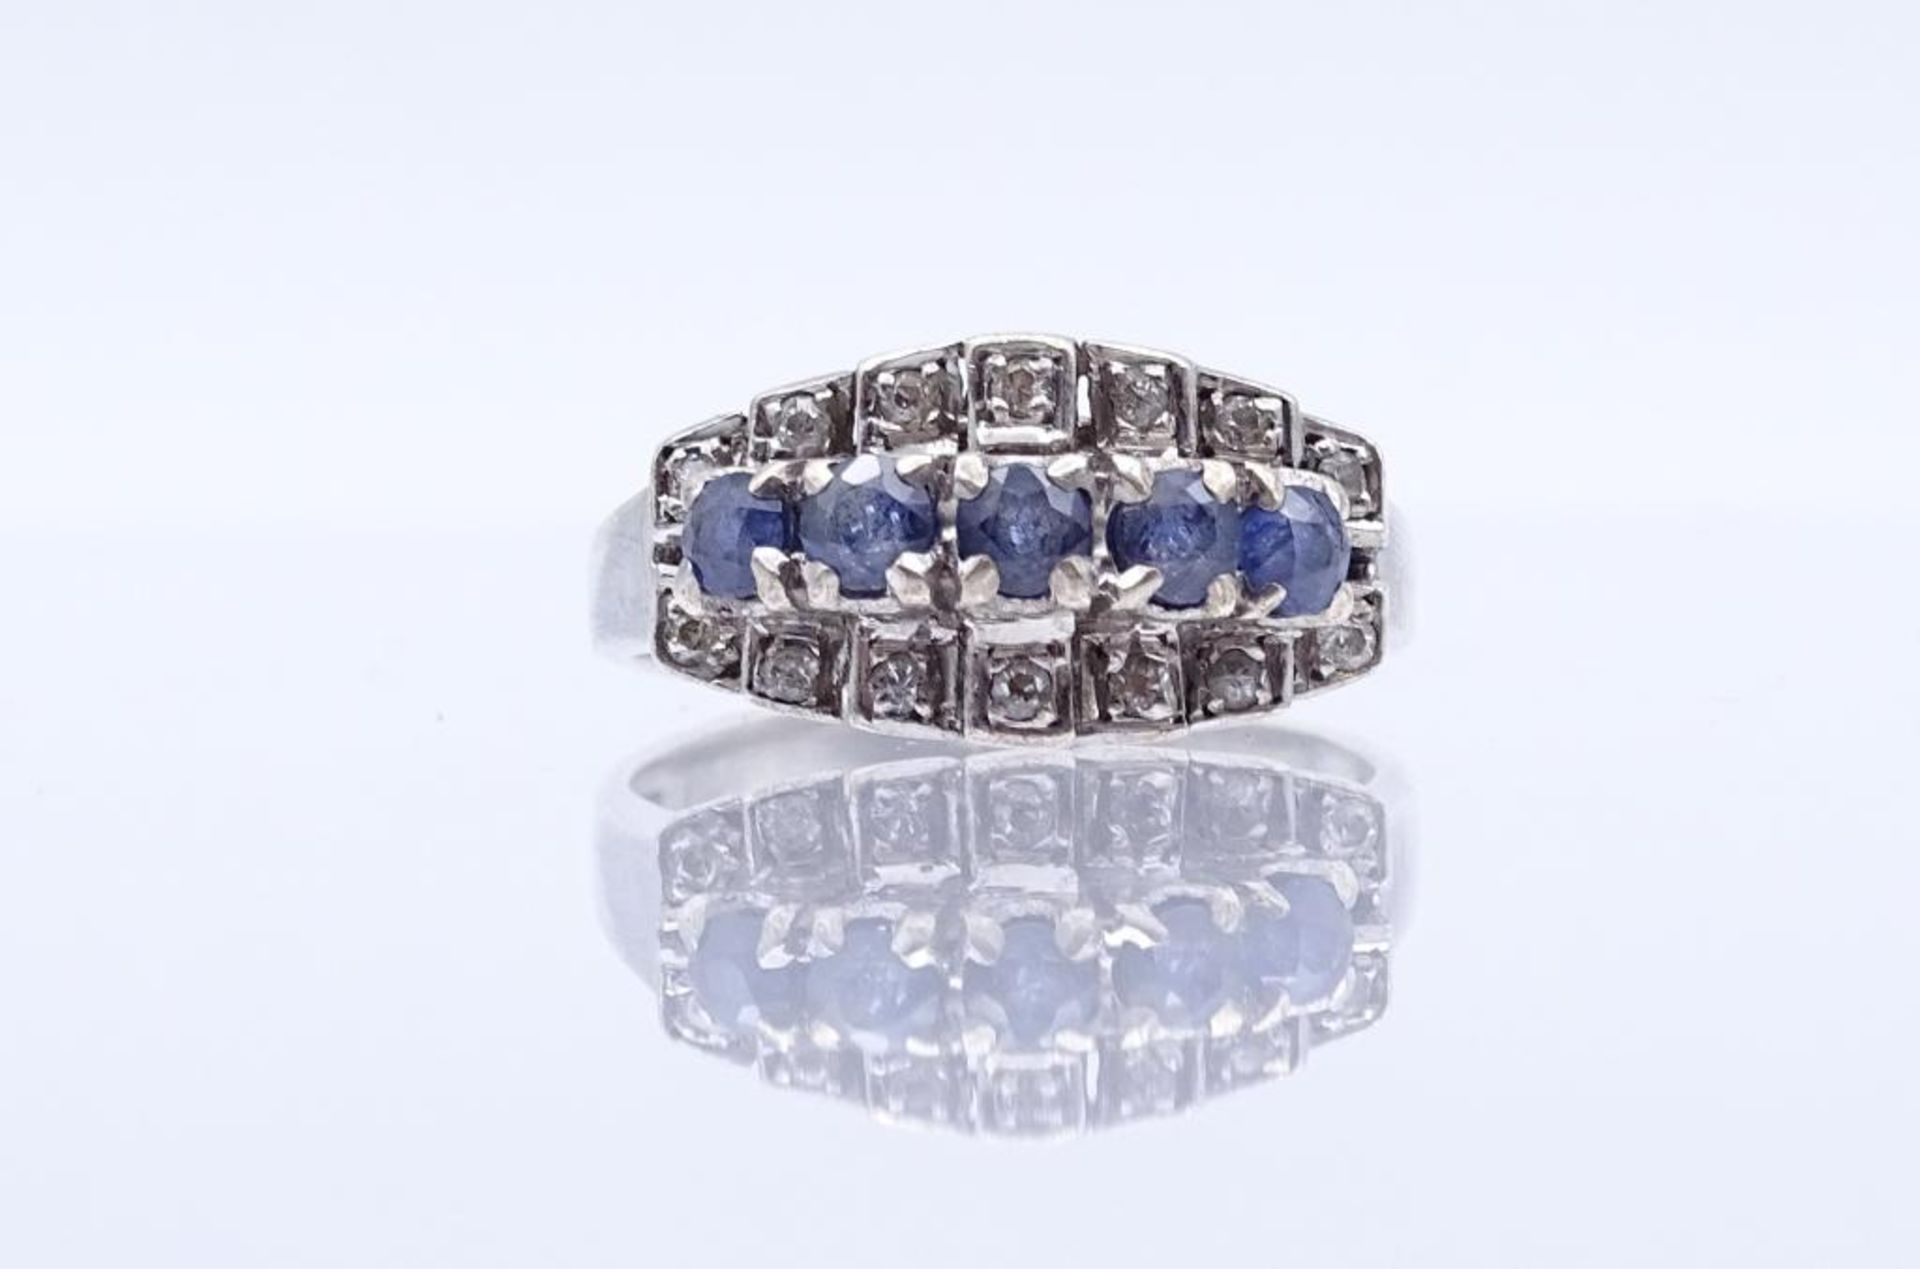 Sterling Silber Ring mit klaren und blauen Steinen (Saphire?), Silber 925/000, 2,9gr., RG 50- - - - Bild 3 aus 5